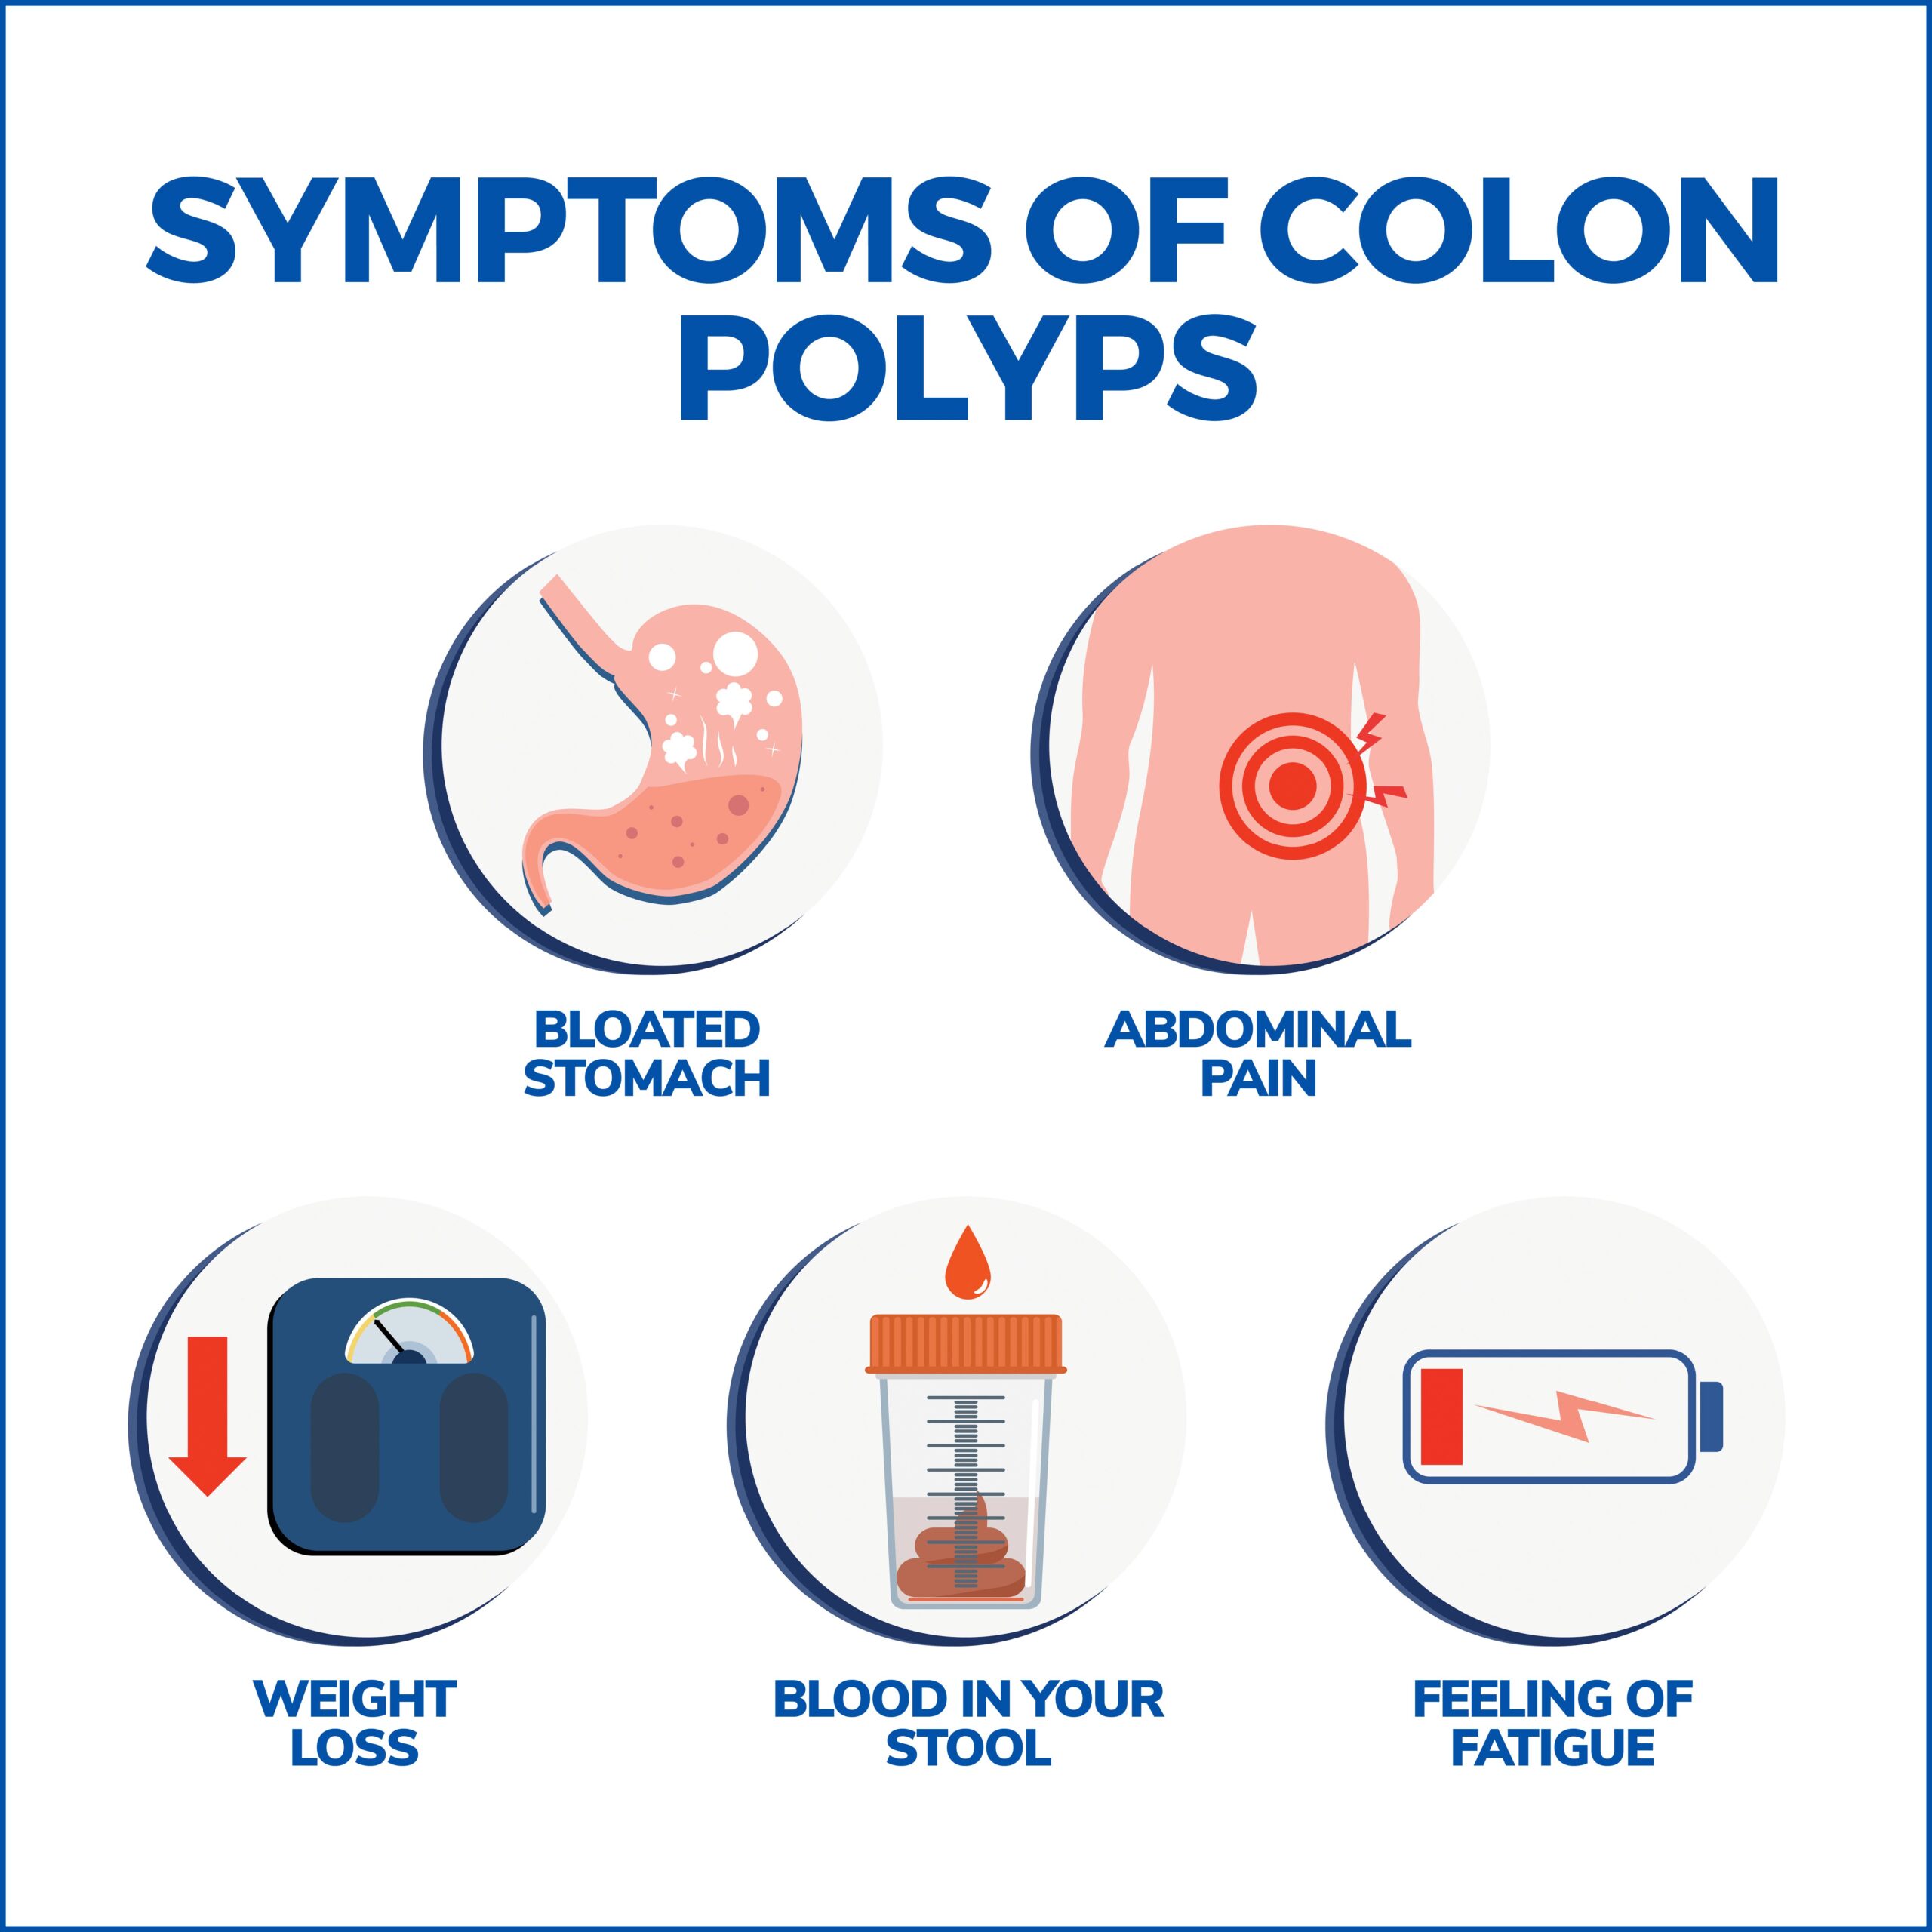 Symptoms of Colon Polyps